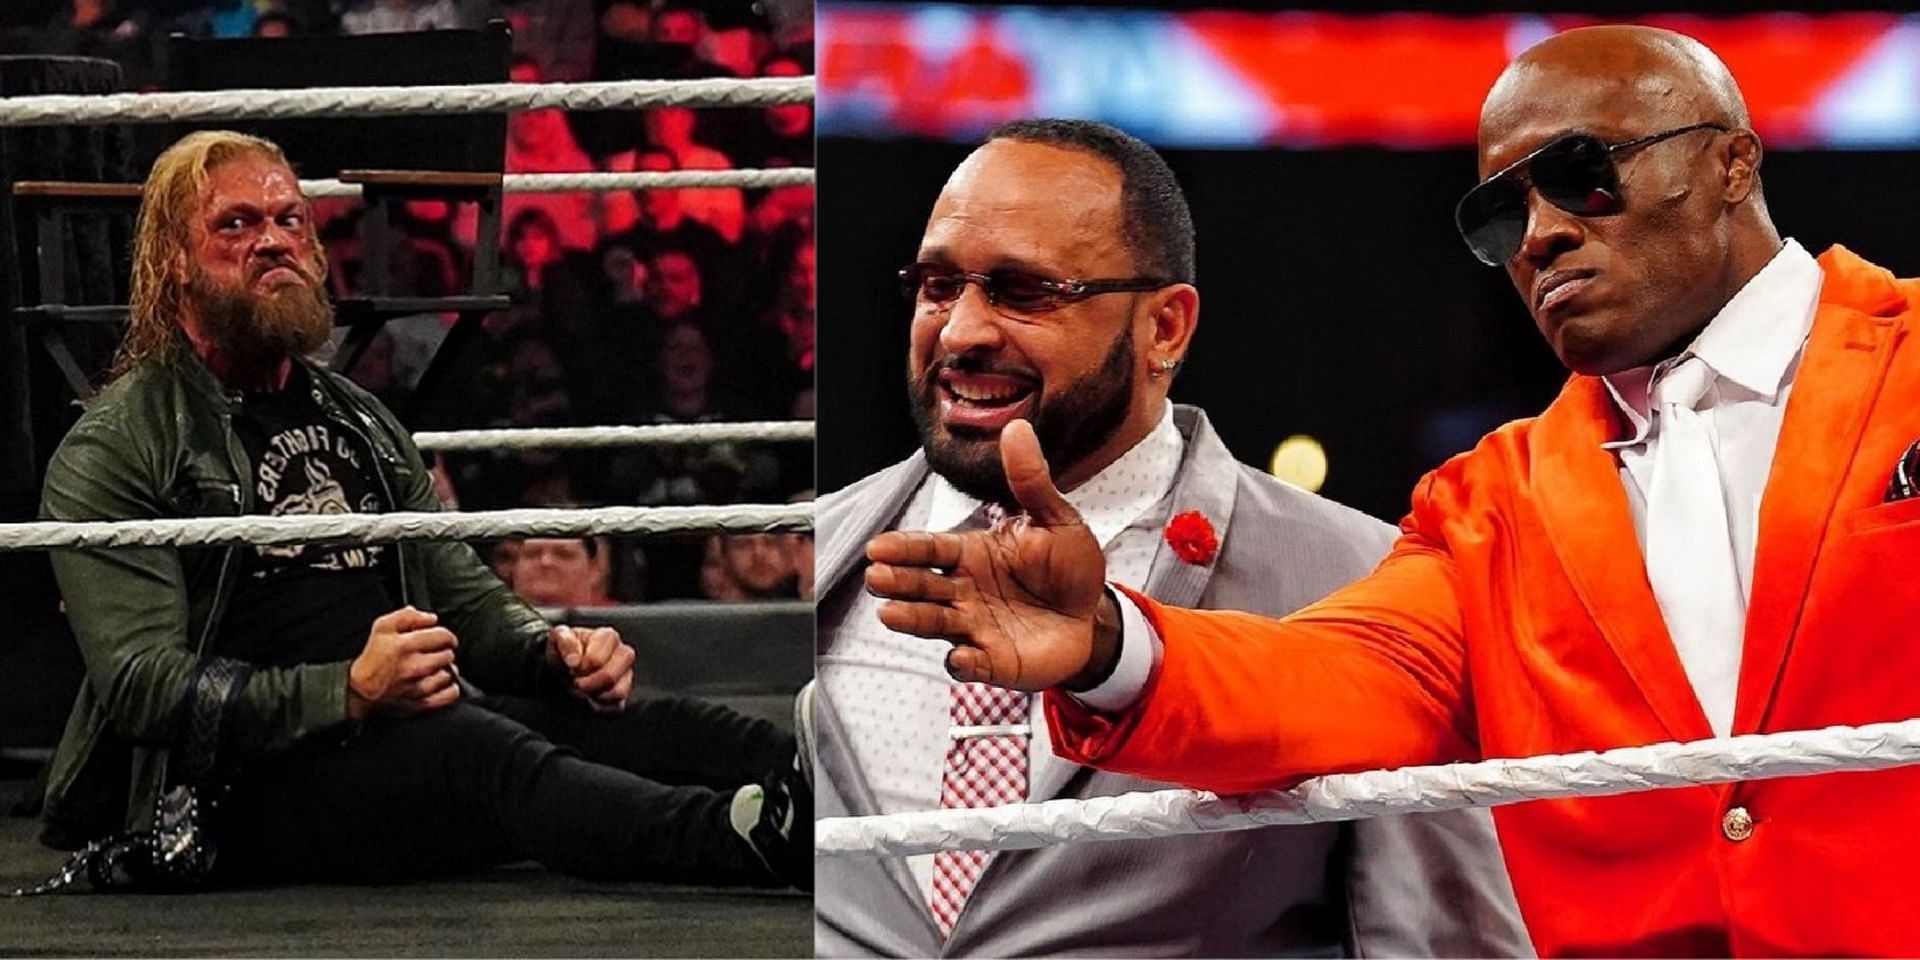 WWE Raw के एपिसोड में काफी सारे अच्छे मैच देखने को मिले और कुछ सैगमेंट्स भी धमाकेदार रहे